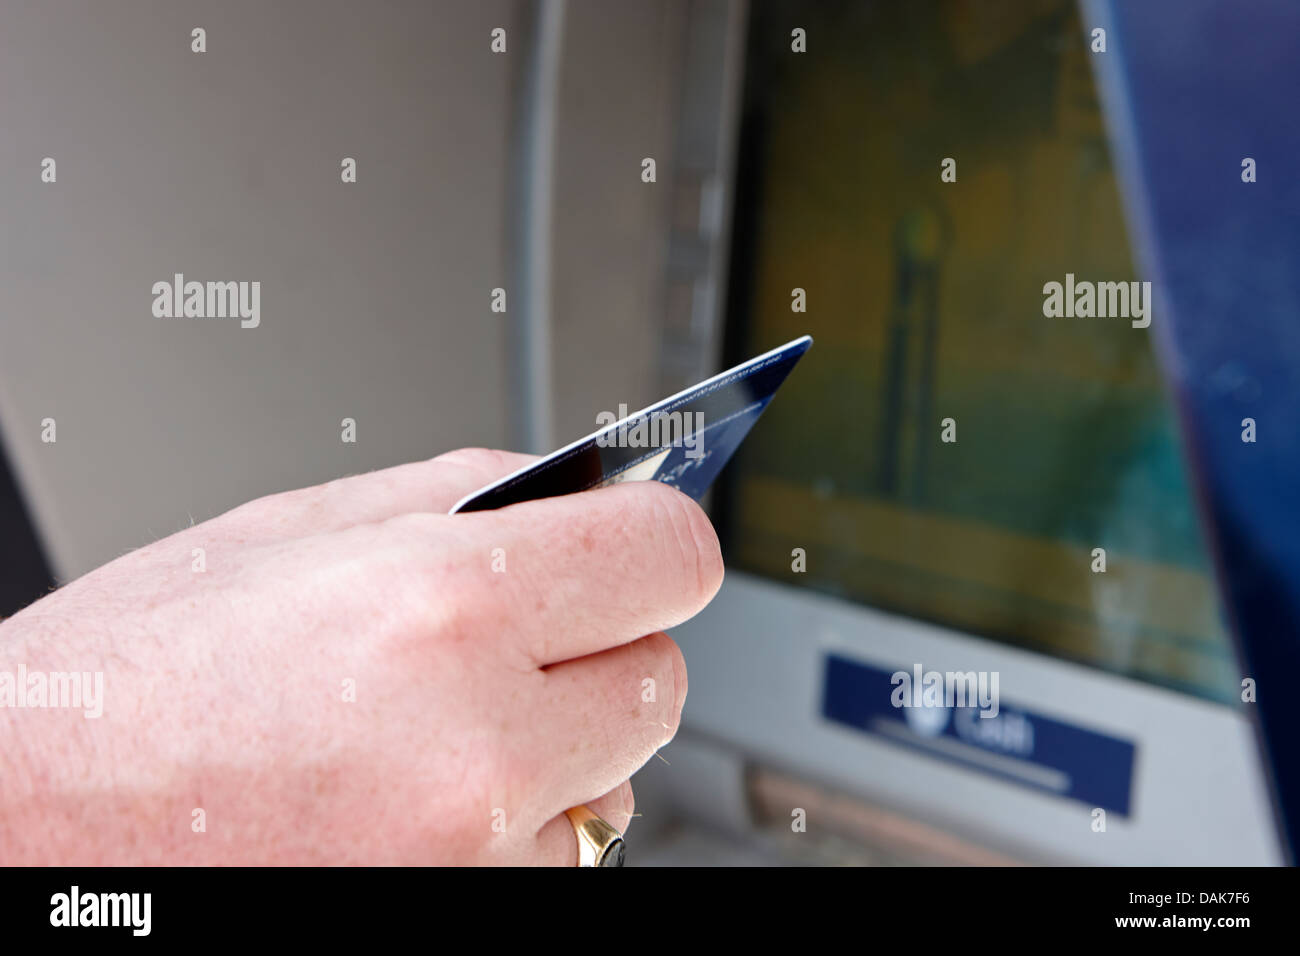 Exploitation de l'homme comptant carte de débit atm machine à part Londres, Angleterre, Royaume-Uni Banque D'Images